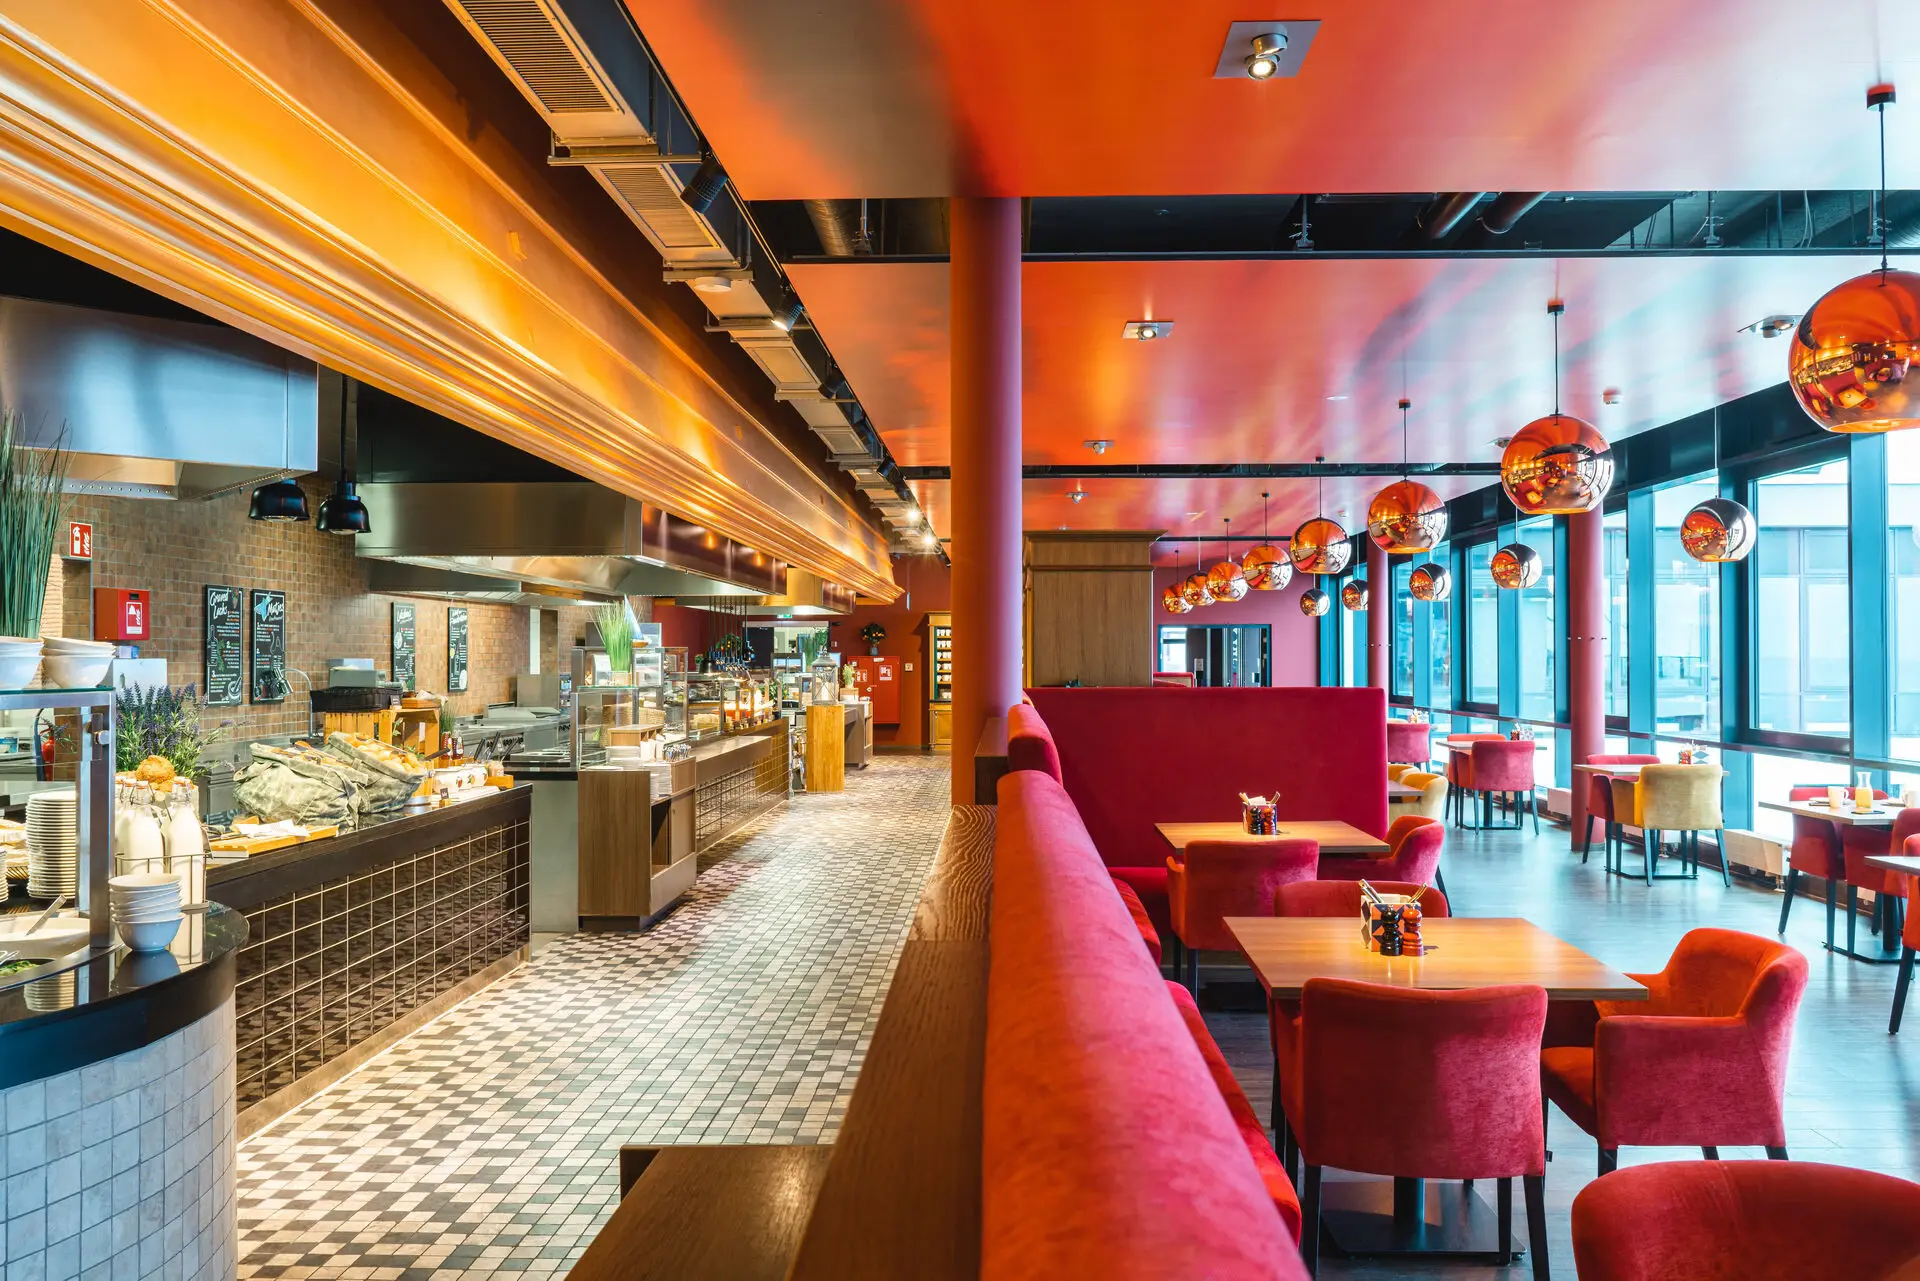 Restaurant-Interieur mit roten Couches und Tischen vor einem Buffet aus verschiedenen Speisen an der Seite